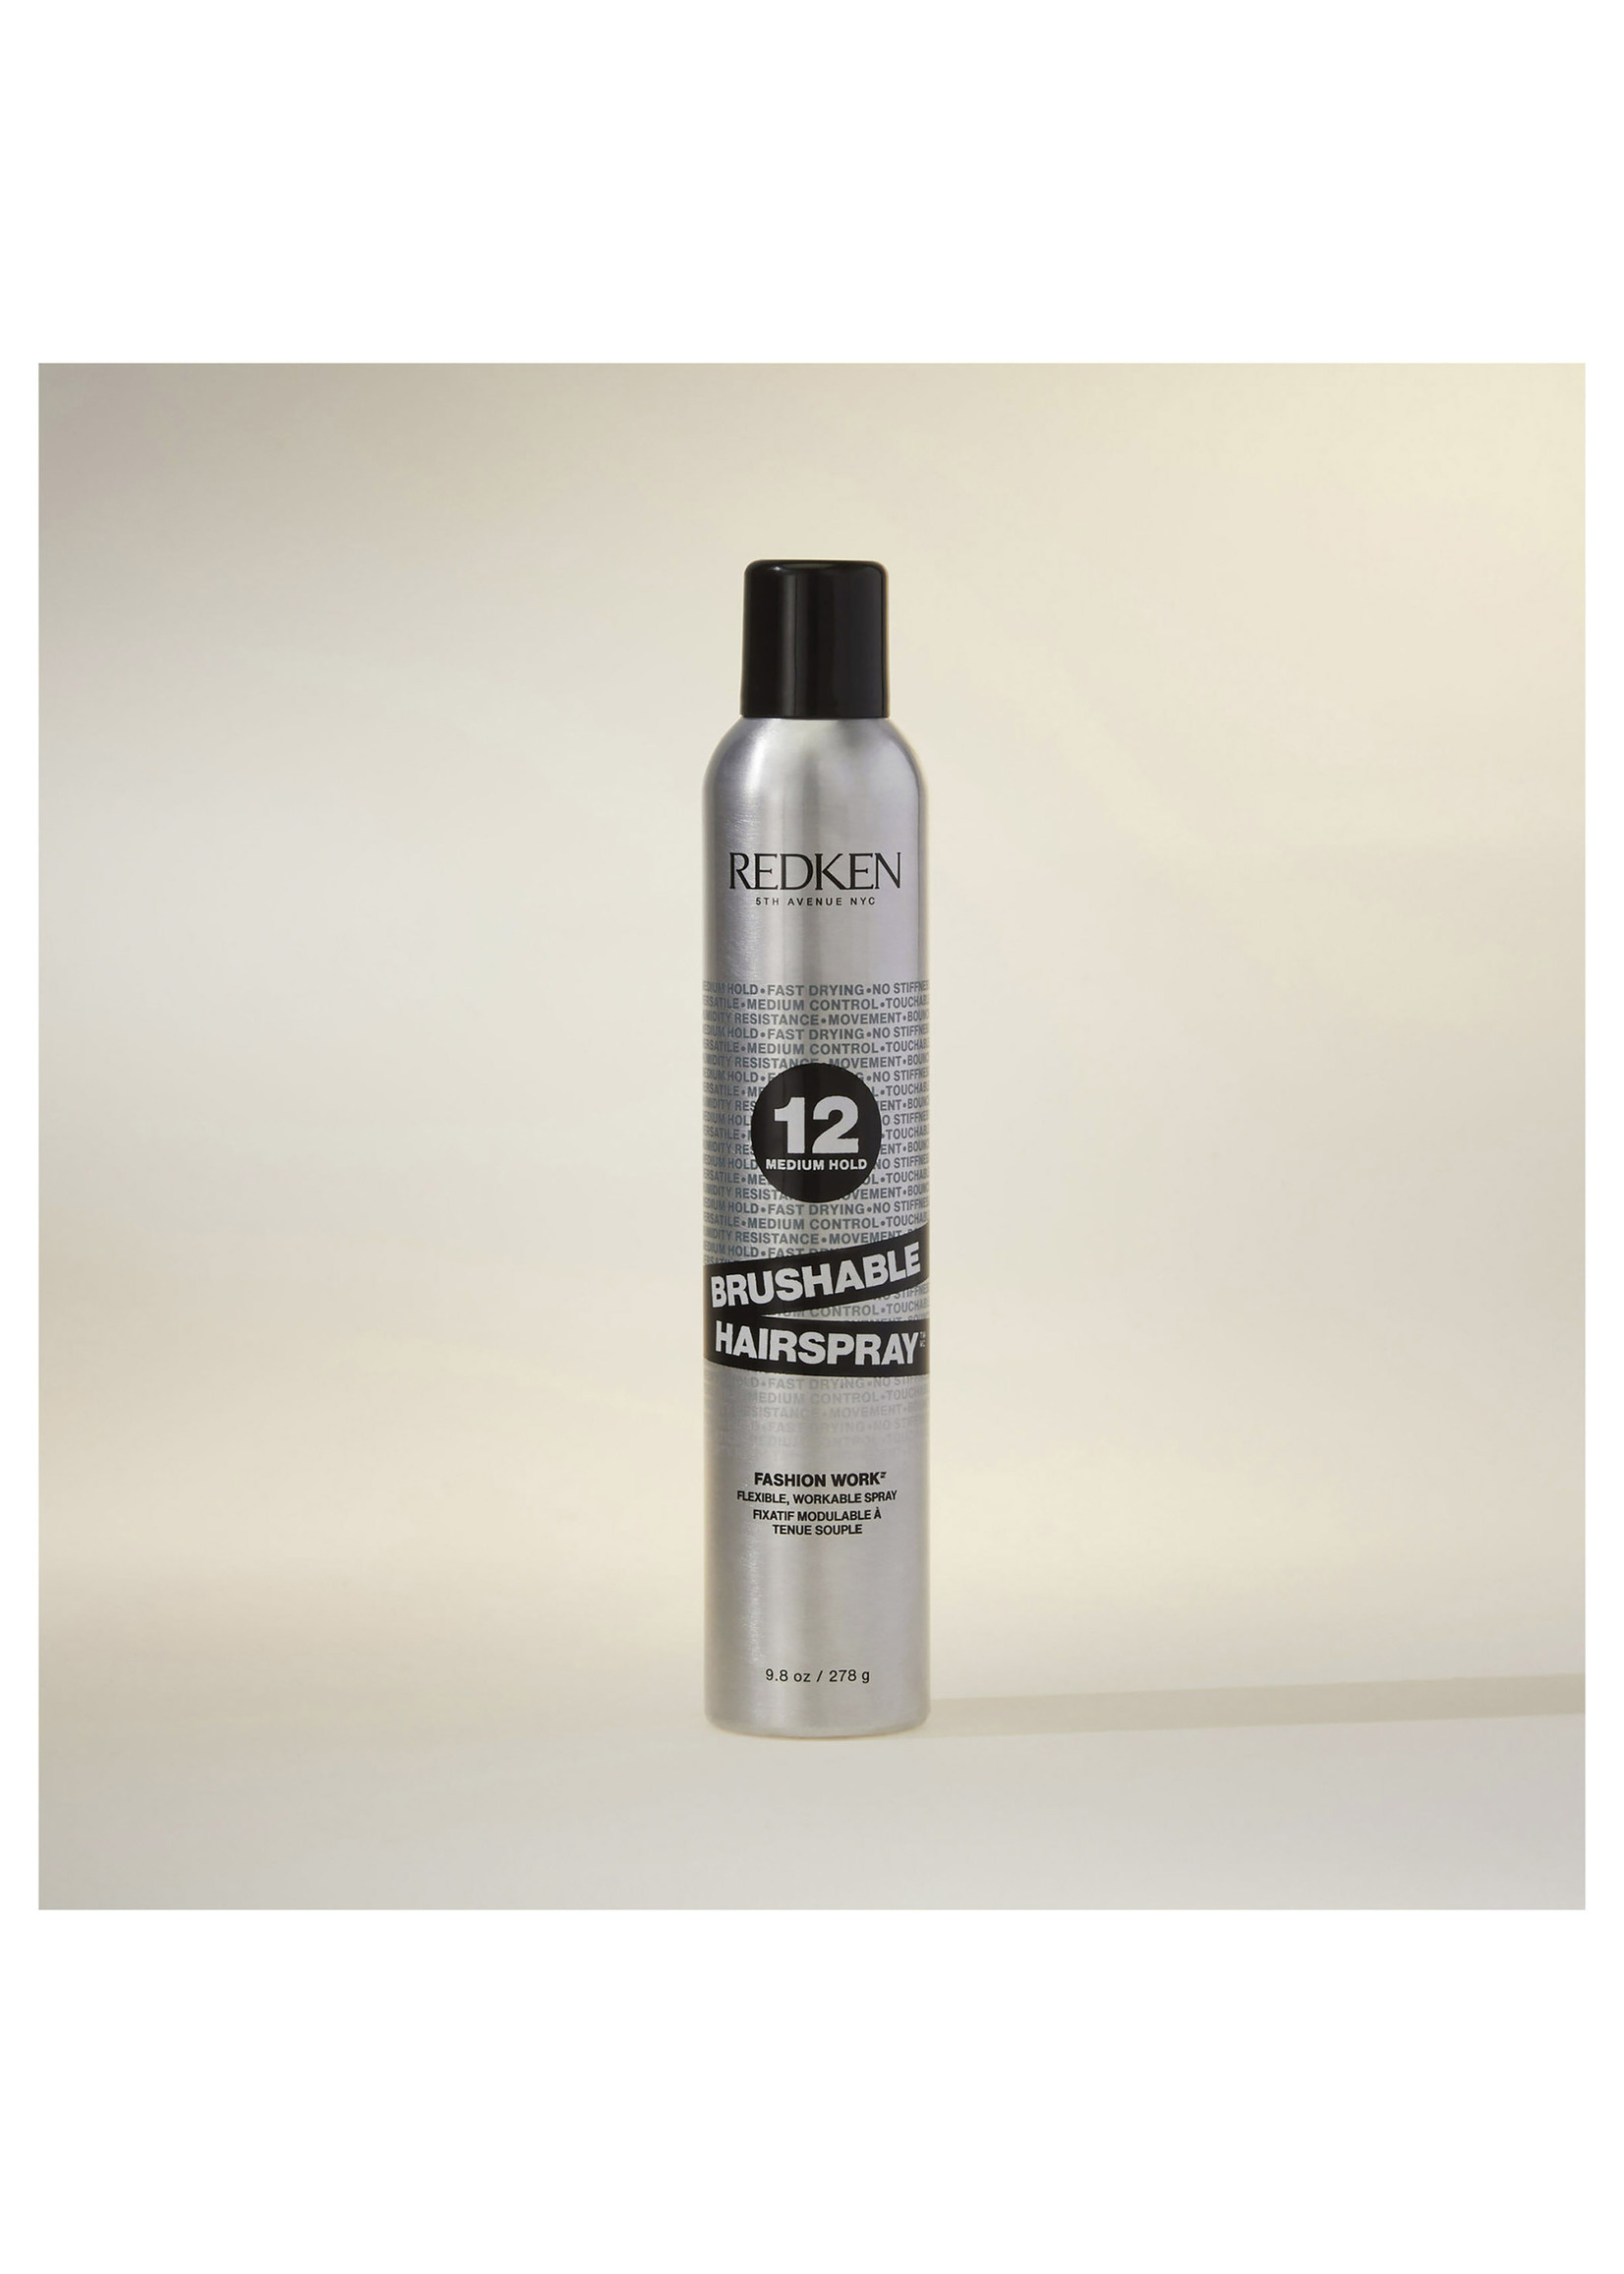 Redken Redken 12 Brushable Hairspray Fashion Work 290g